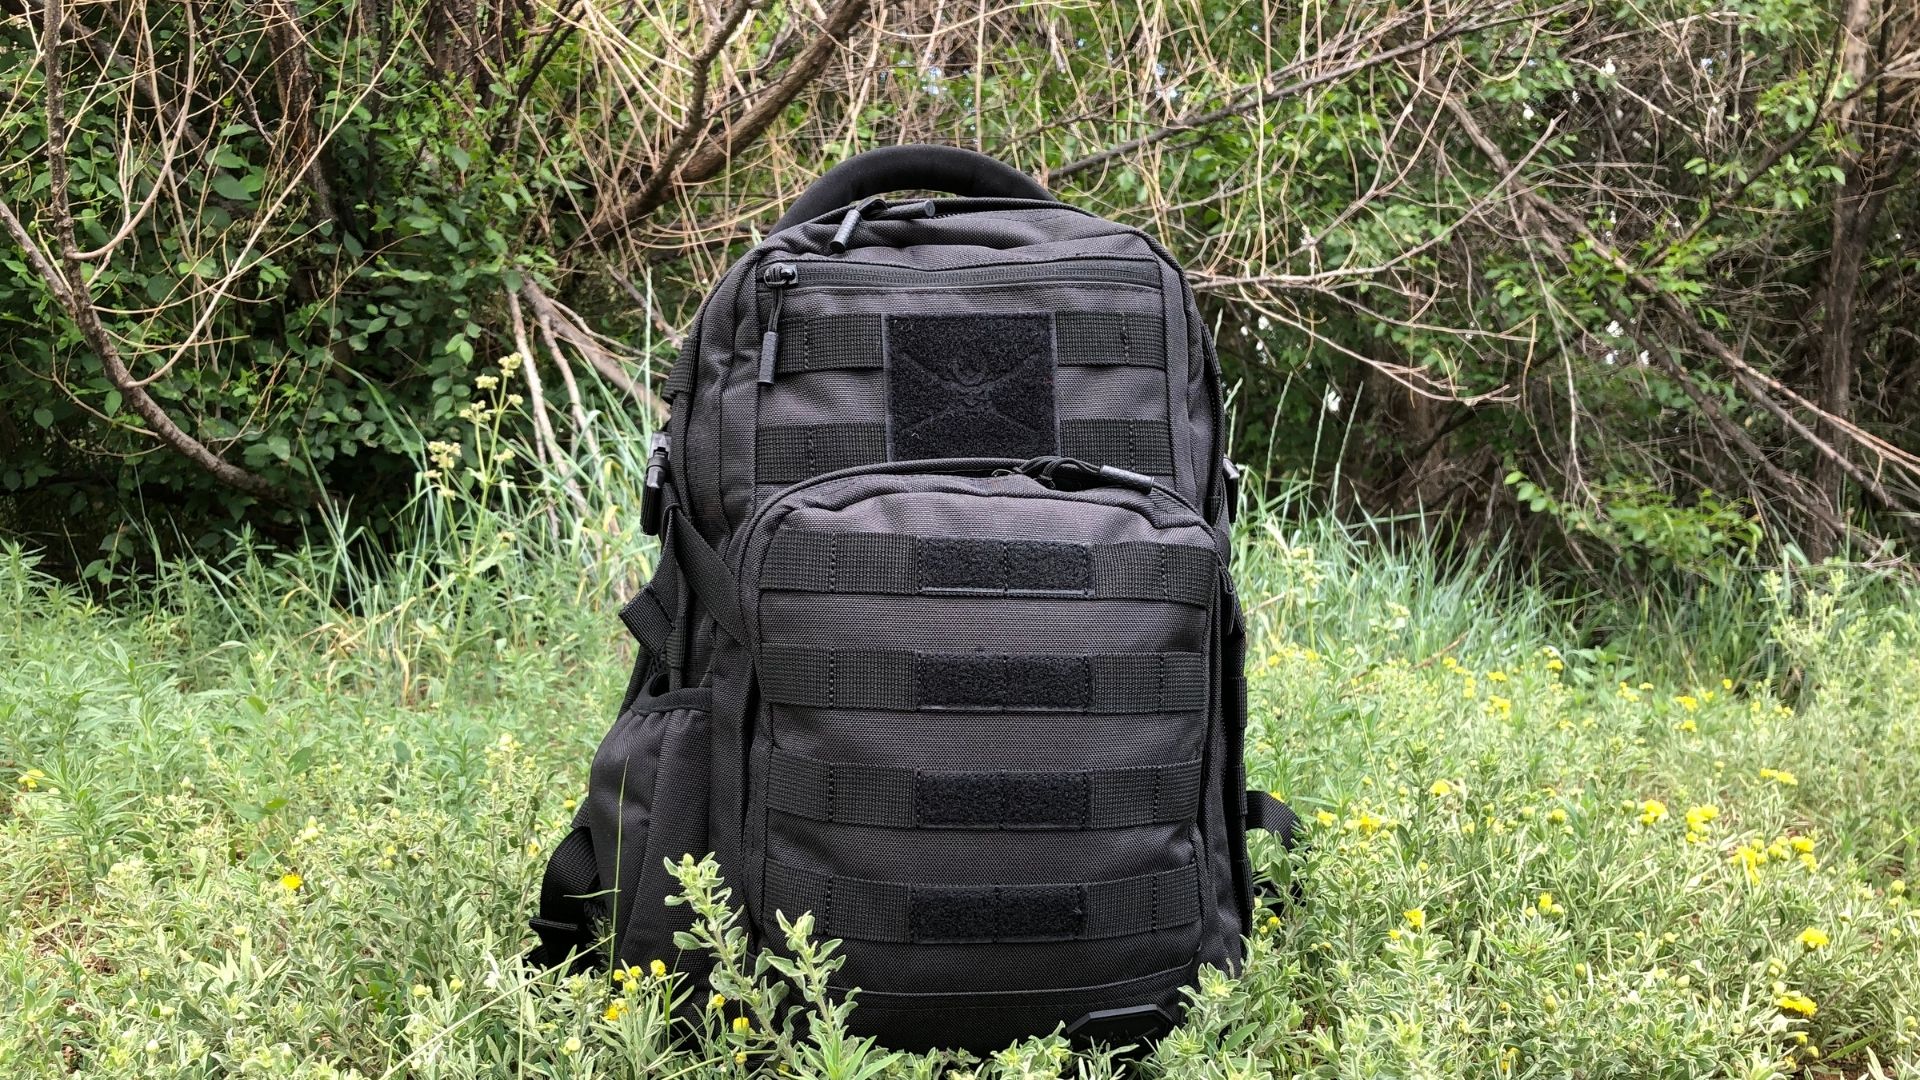 https://taskandpurpose.com/uploads/2021/06/29/Samurai-Tactical-Wakizashi-Tactical-Backpack-Featured.jpg?auto=webp